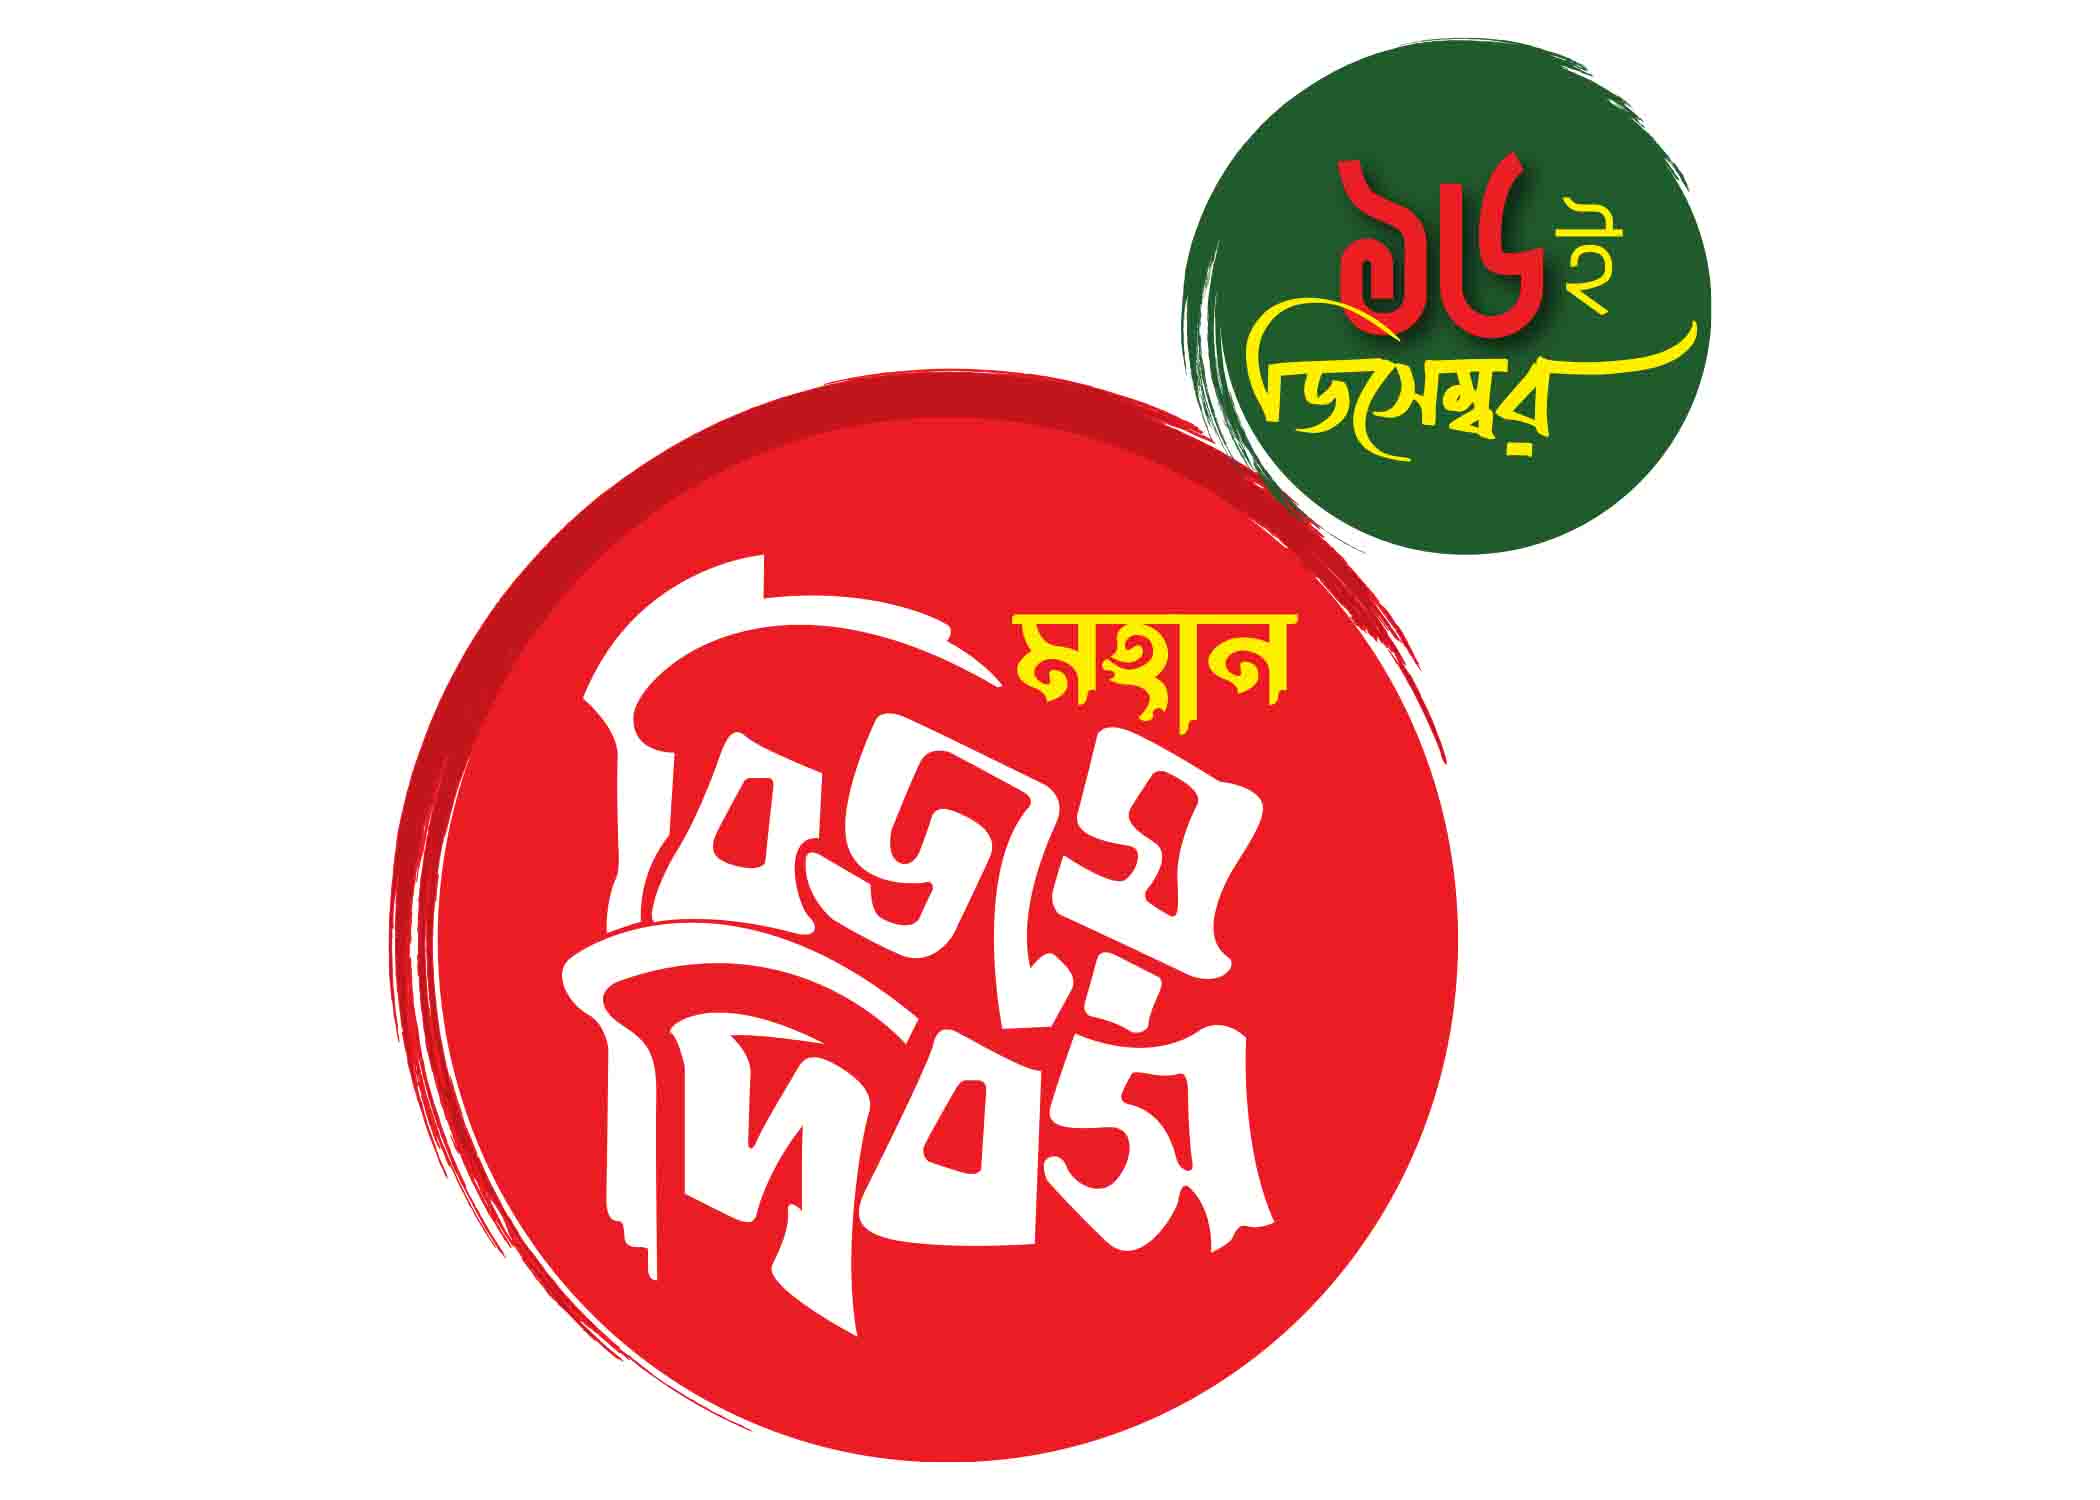 ১৬ ডিসেম্বর মহান বিজয় দিবস টাইপোগ্রাফি । Bangla Typography PNG